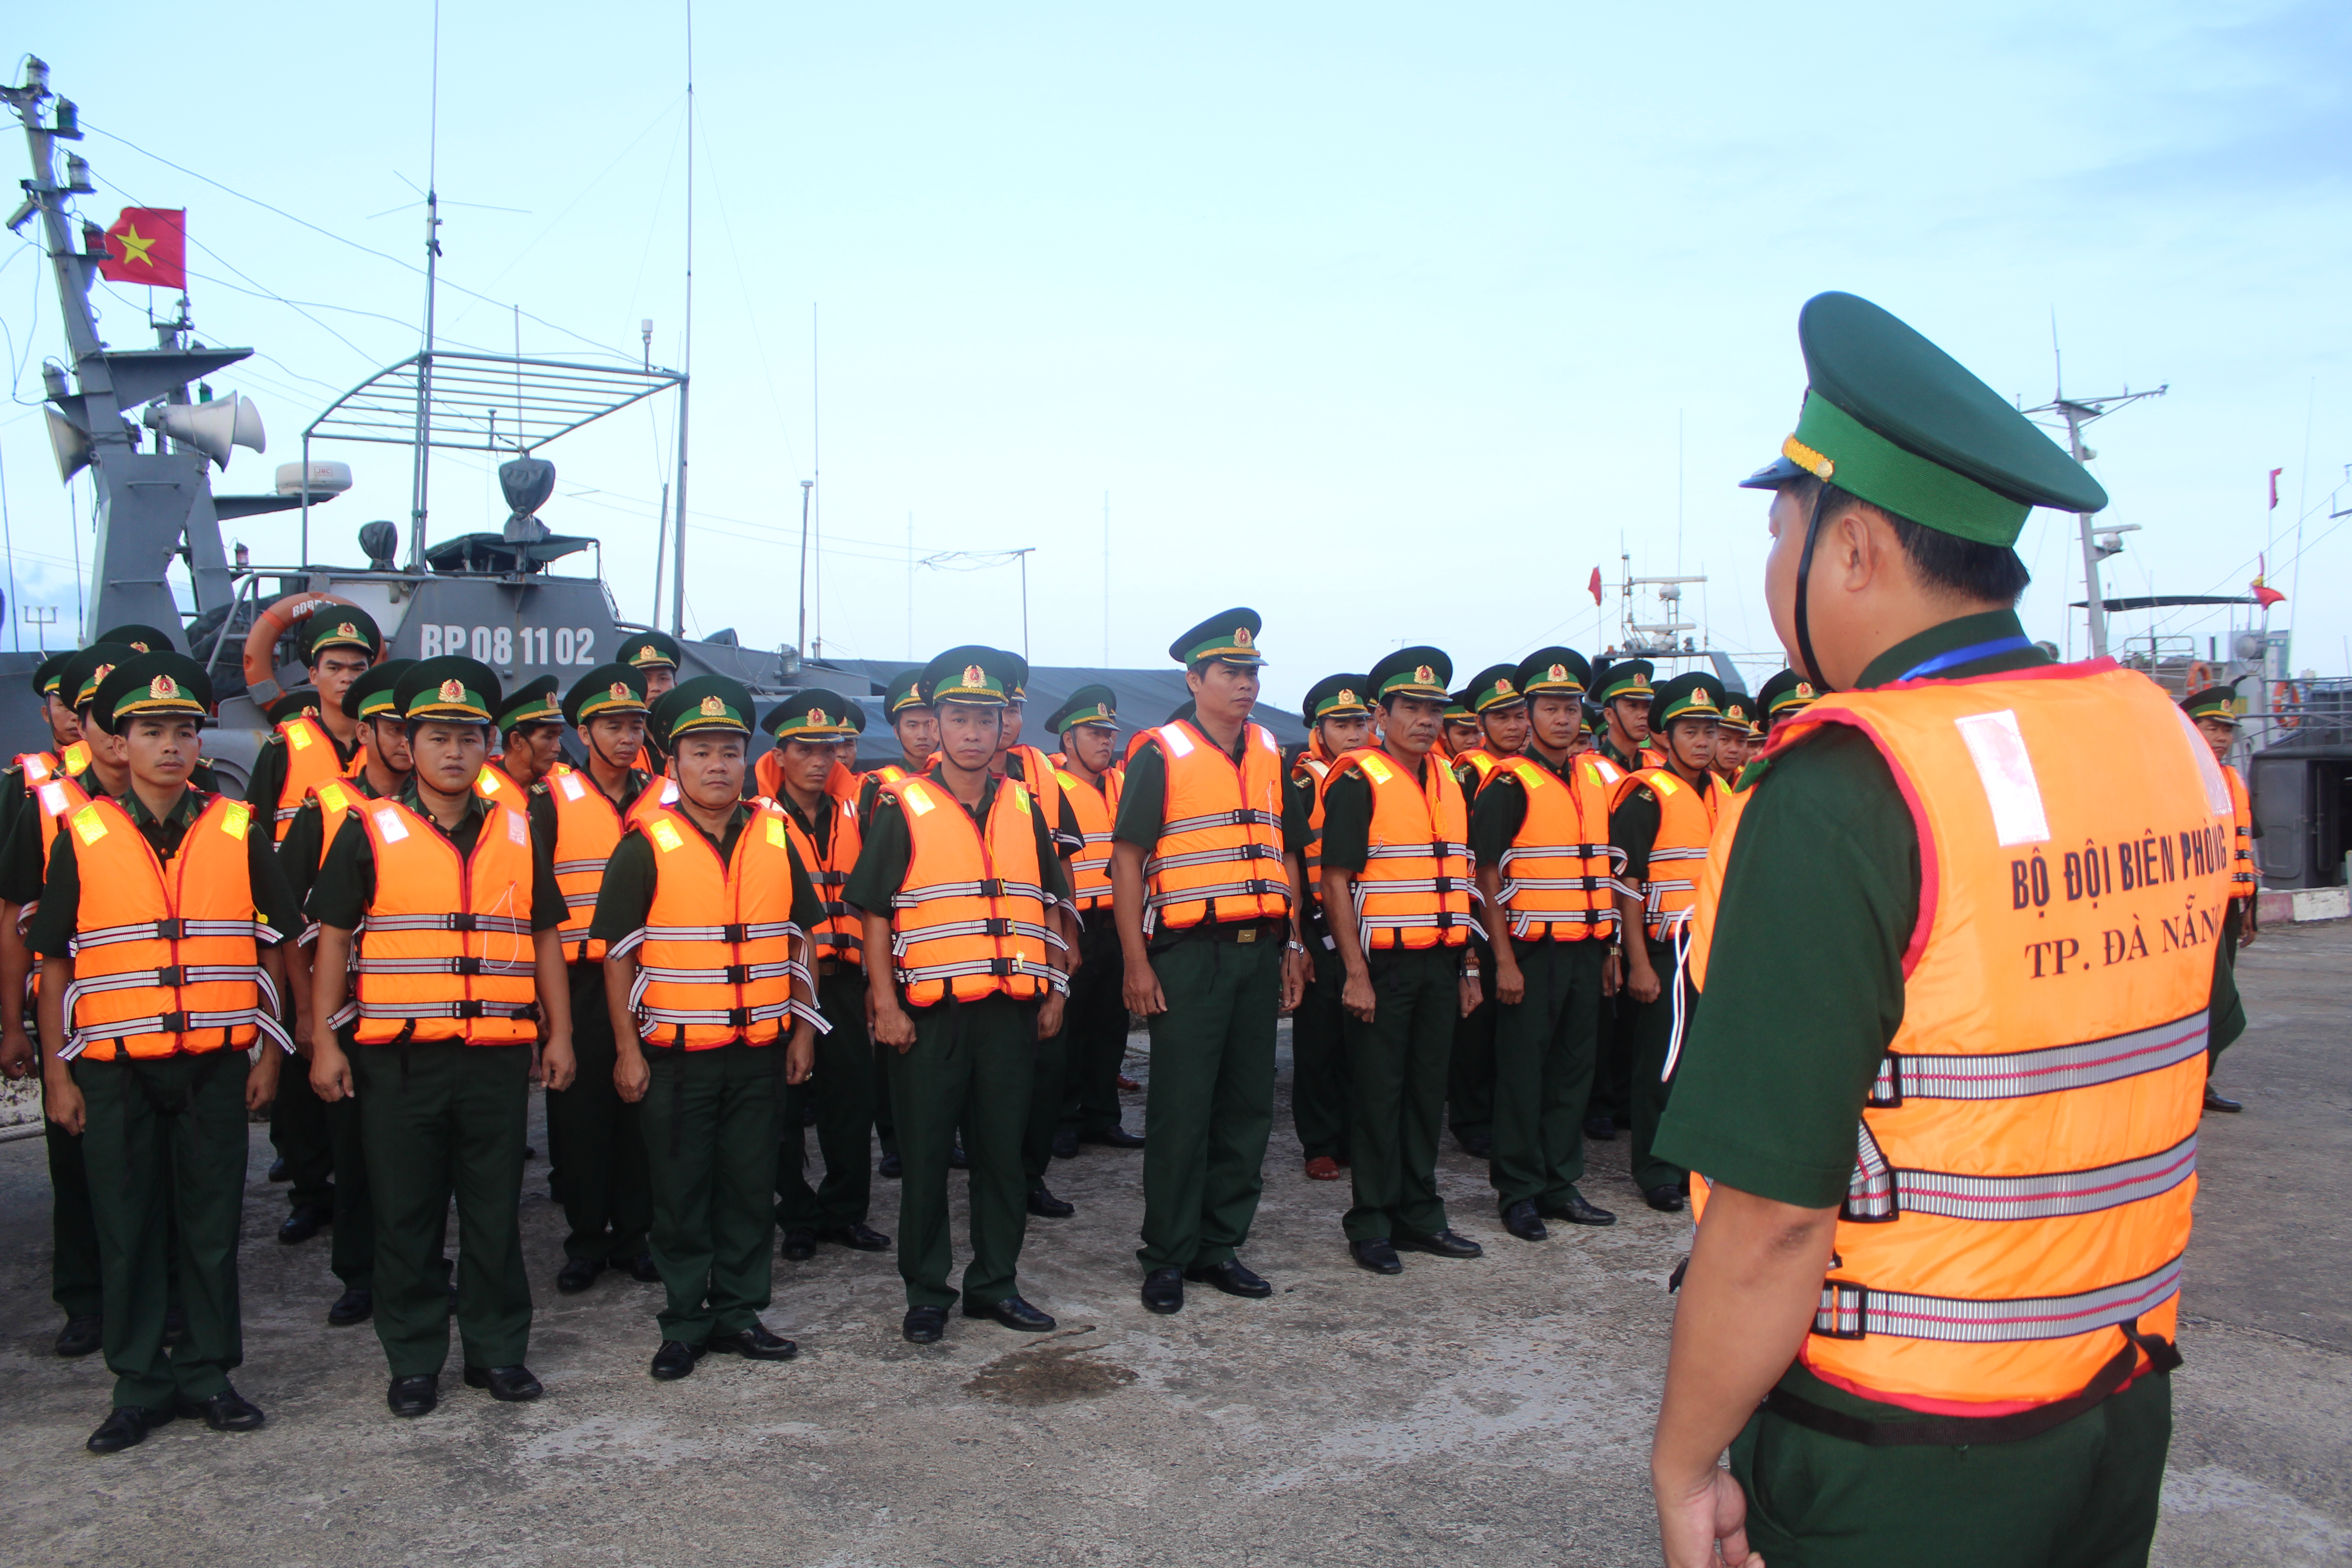 BĐBP Đà Nẵng hoàn thành tốt nhiệm vụ bảo vệ Tuần lễ Cấp cao APEC 2017